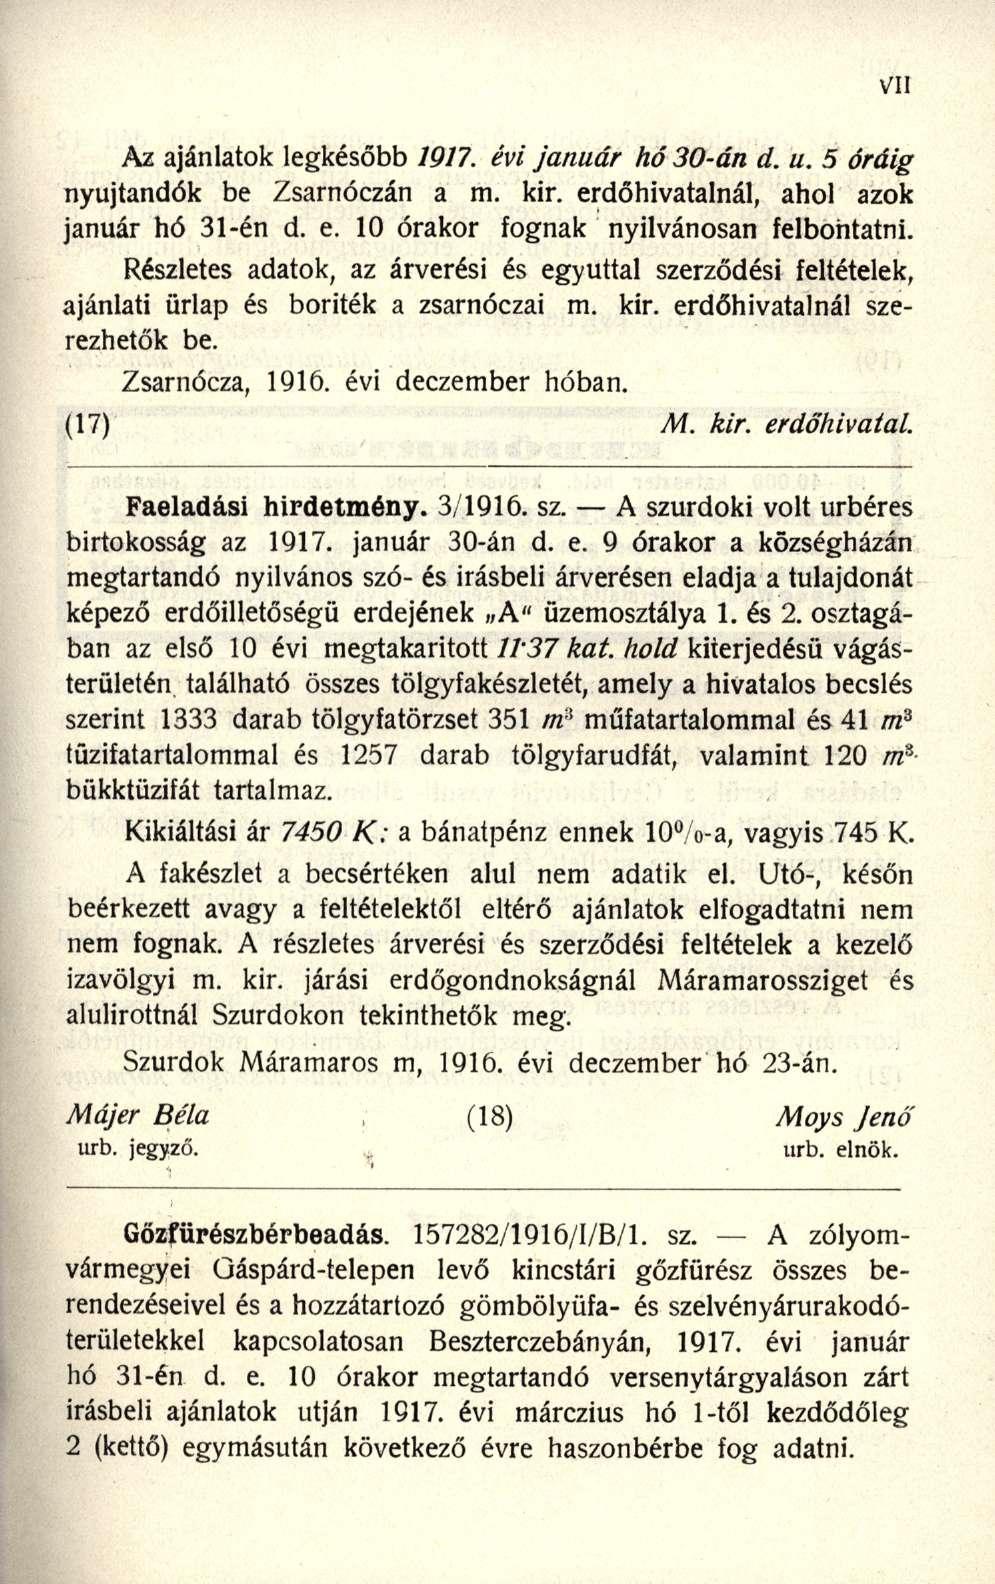 Az ajánlatok legkésőb b 1917. évi január hó 30-án d. u. 5 óráig nyújtandók b e Zsarnóczá n a m. kir. erdőhivatalnál, aho l azo k január h ó 31-é n d. e. 1 0 órakor fogna k nyilvánosa n felbontatni.